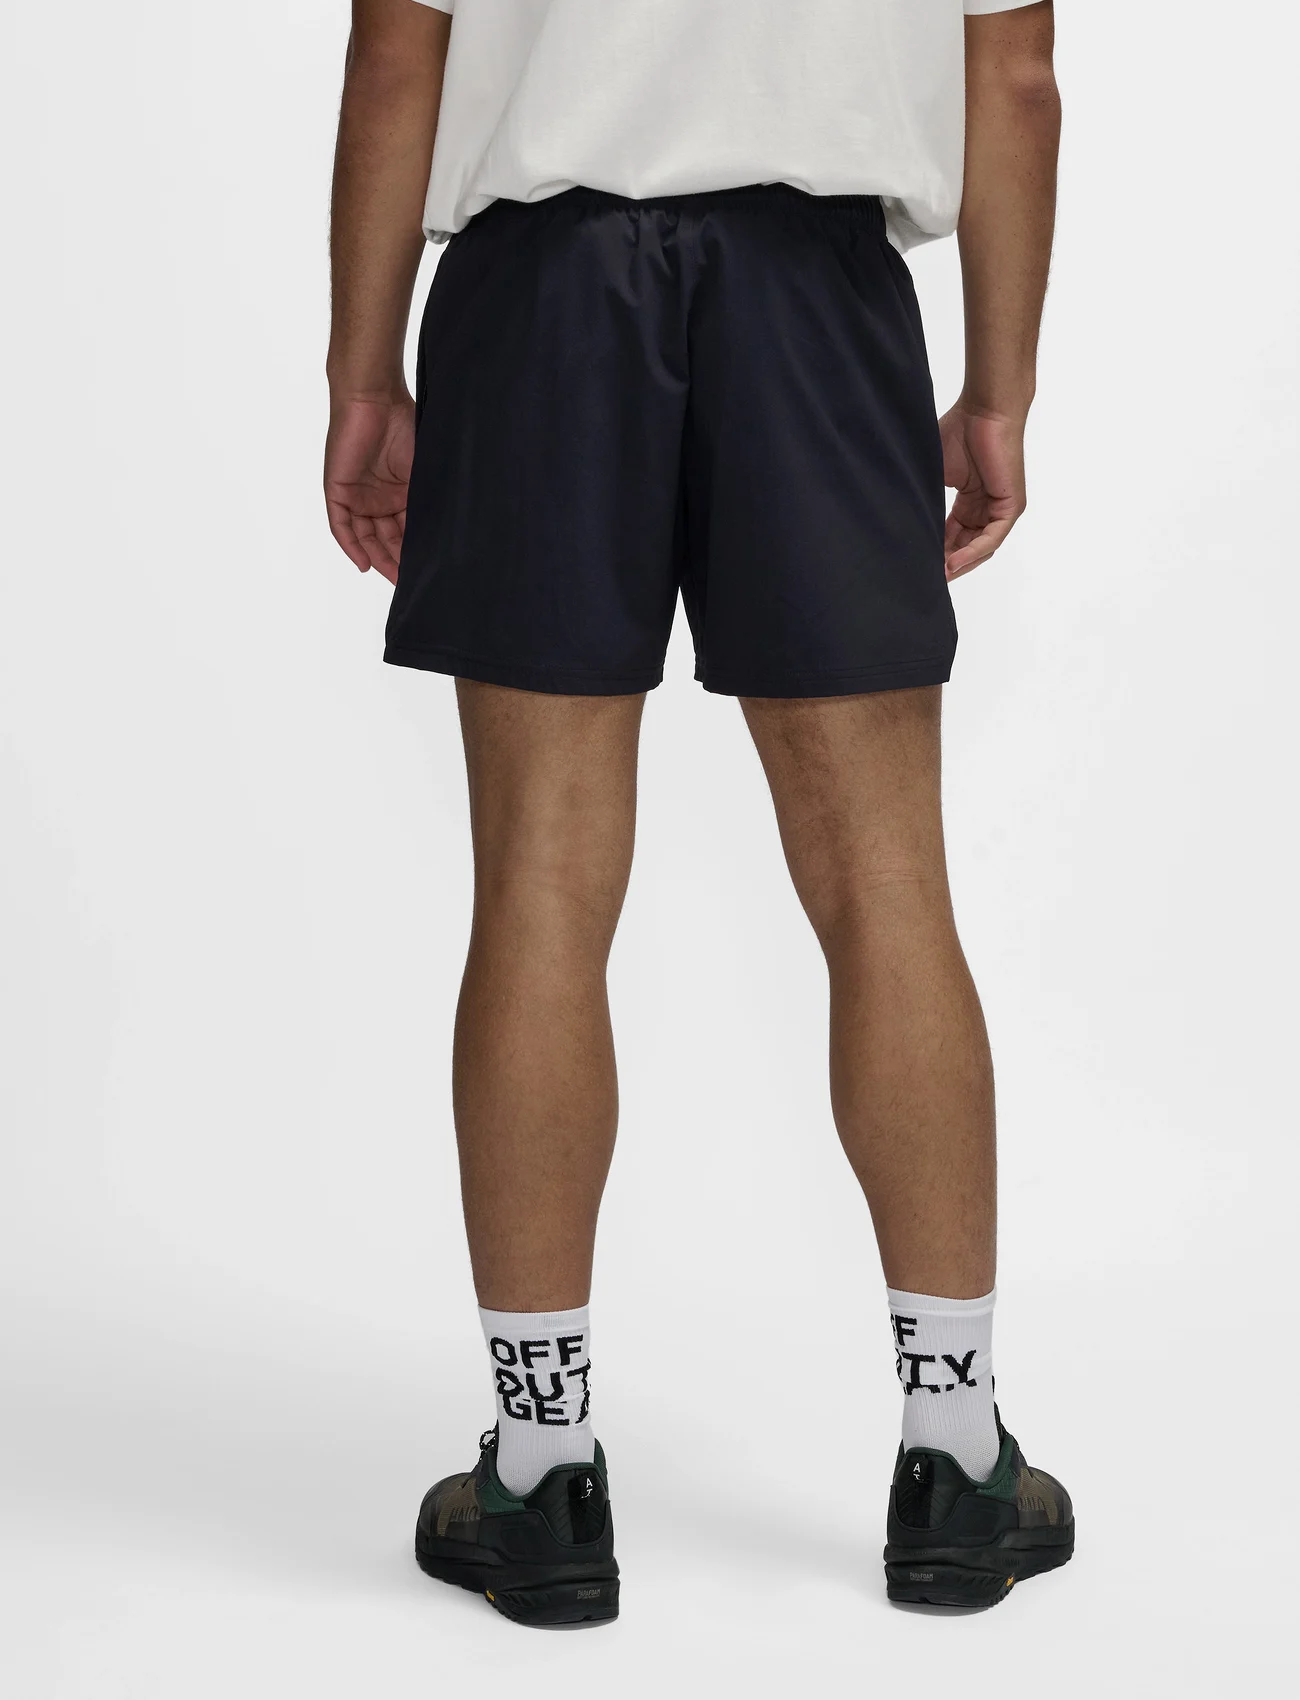 HALO - HALO SHORTS - training shorts - black - 5